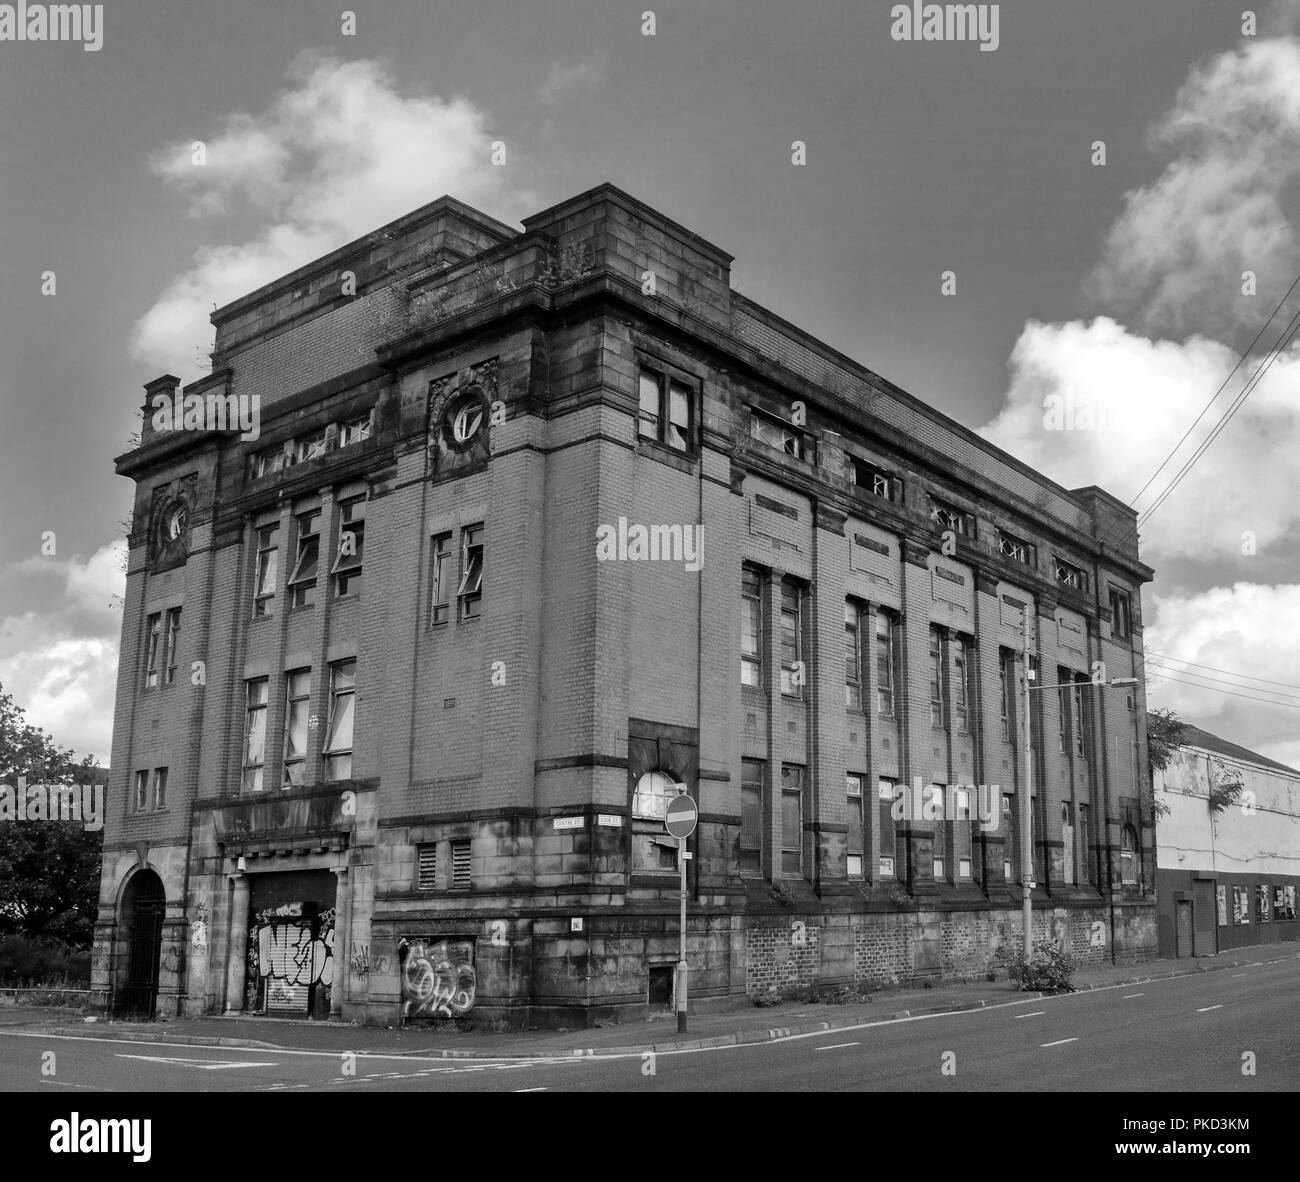 GLASGOW, SCOZIA - 12 settembre 2018: una fotografia in bianco e nero dell'ex centrale telefonica al Centro Street, Tradeston. Foto Stock